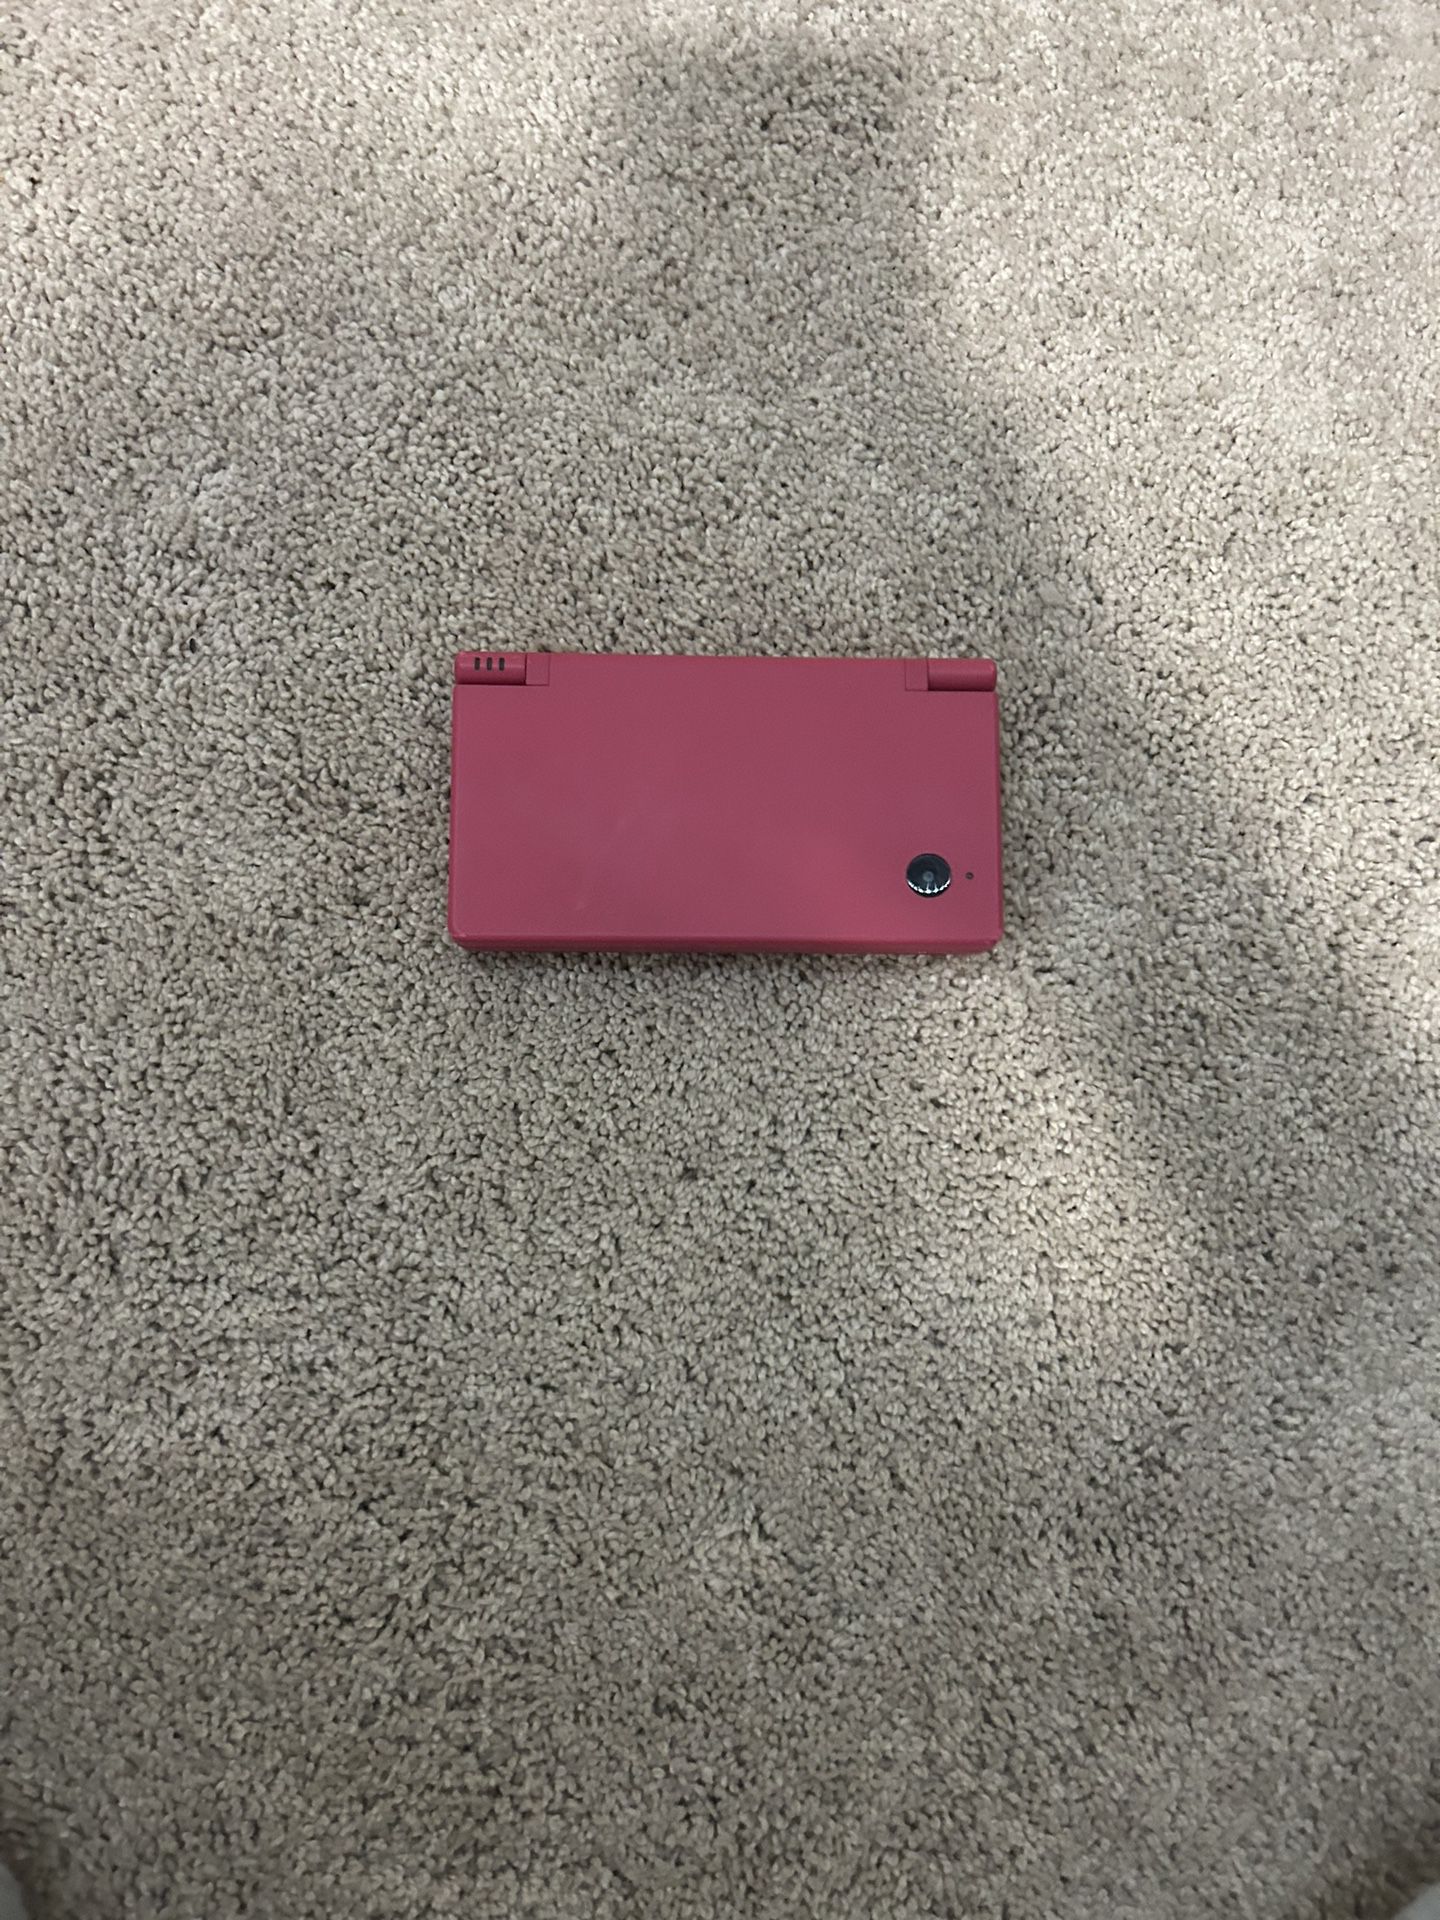 Pink Nintendo DSi 